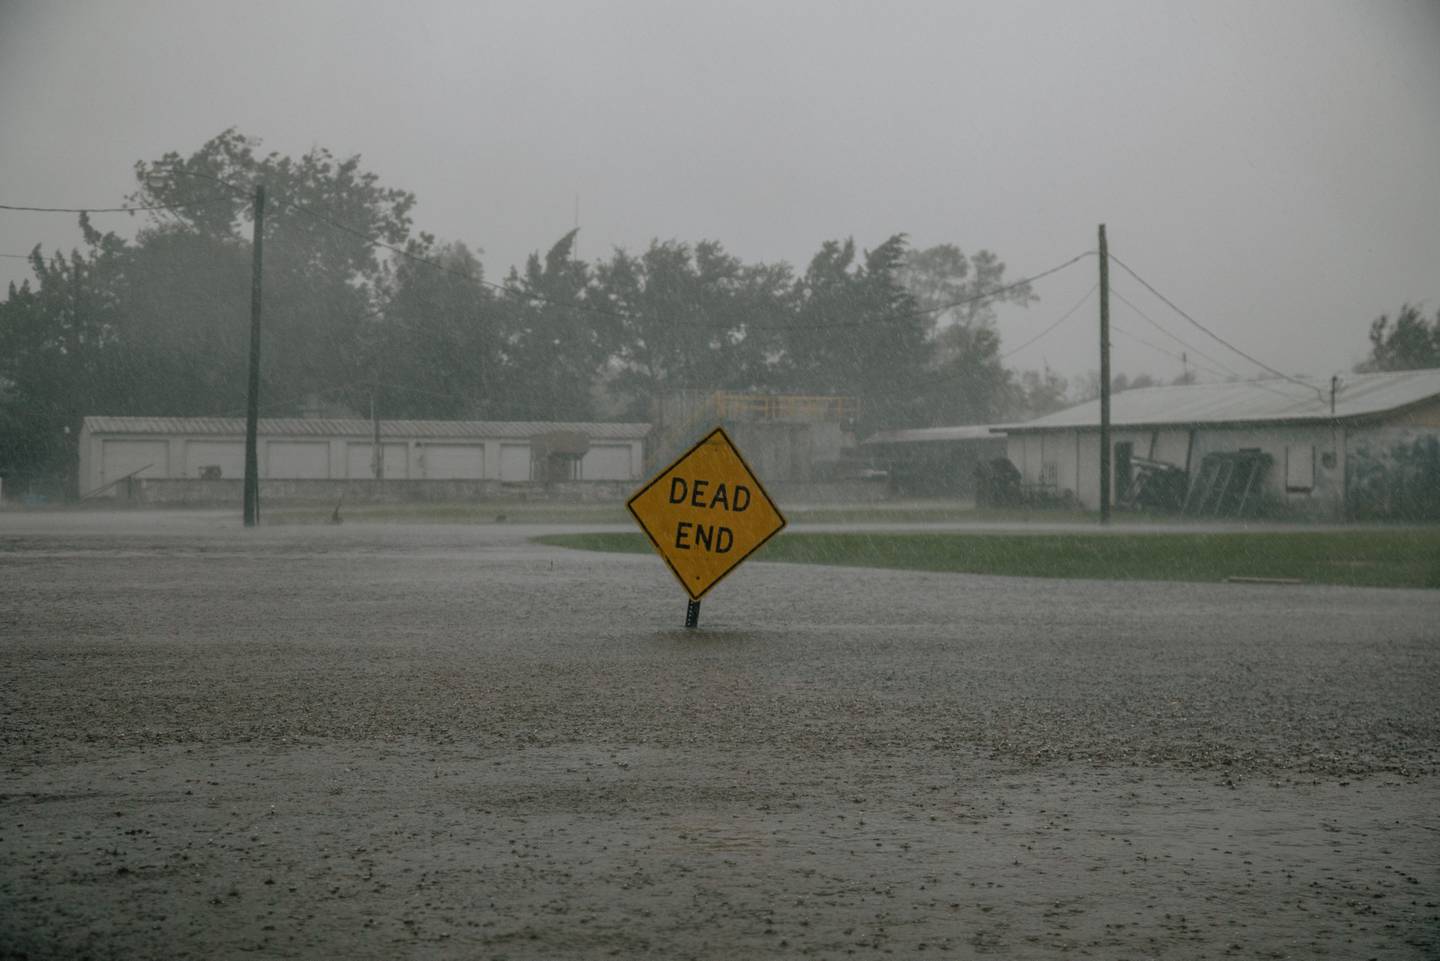 Una señal de tránsito en medio de agua de inundación tras un huracán en Luisiana.